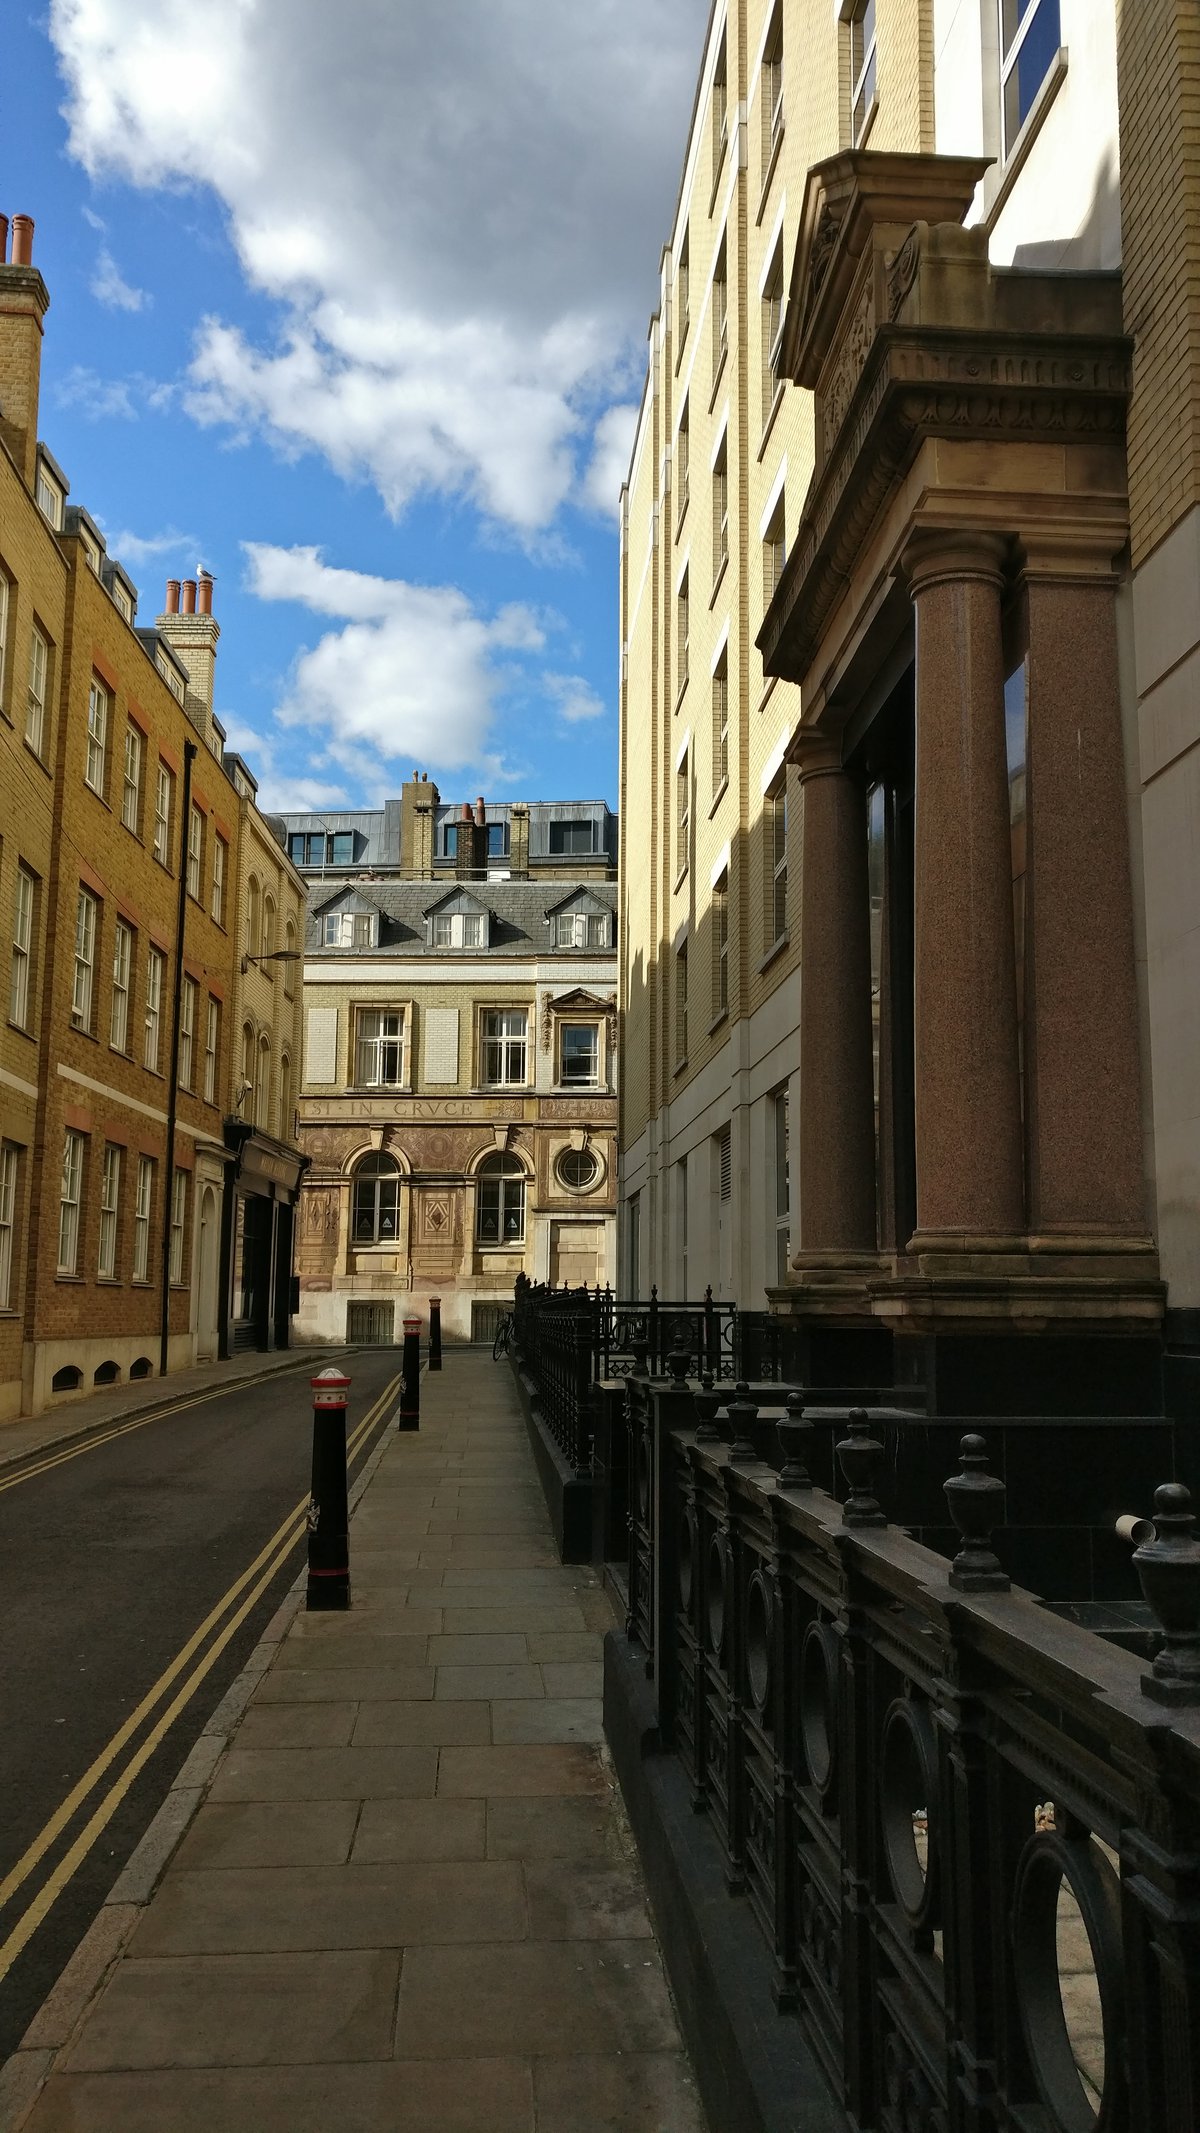 Street in London